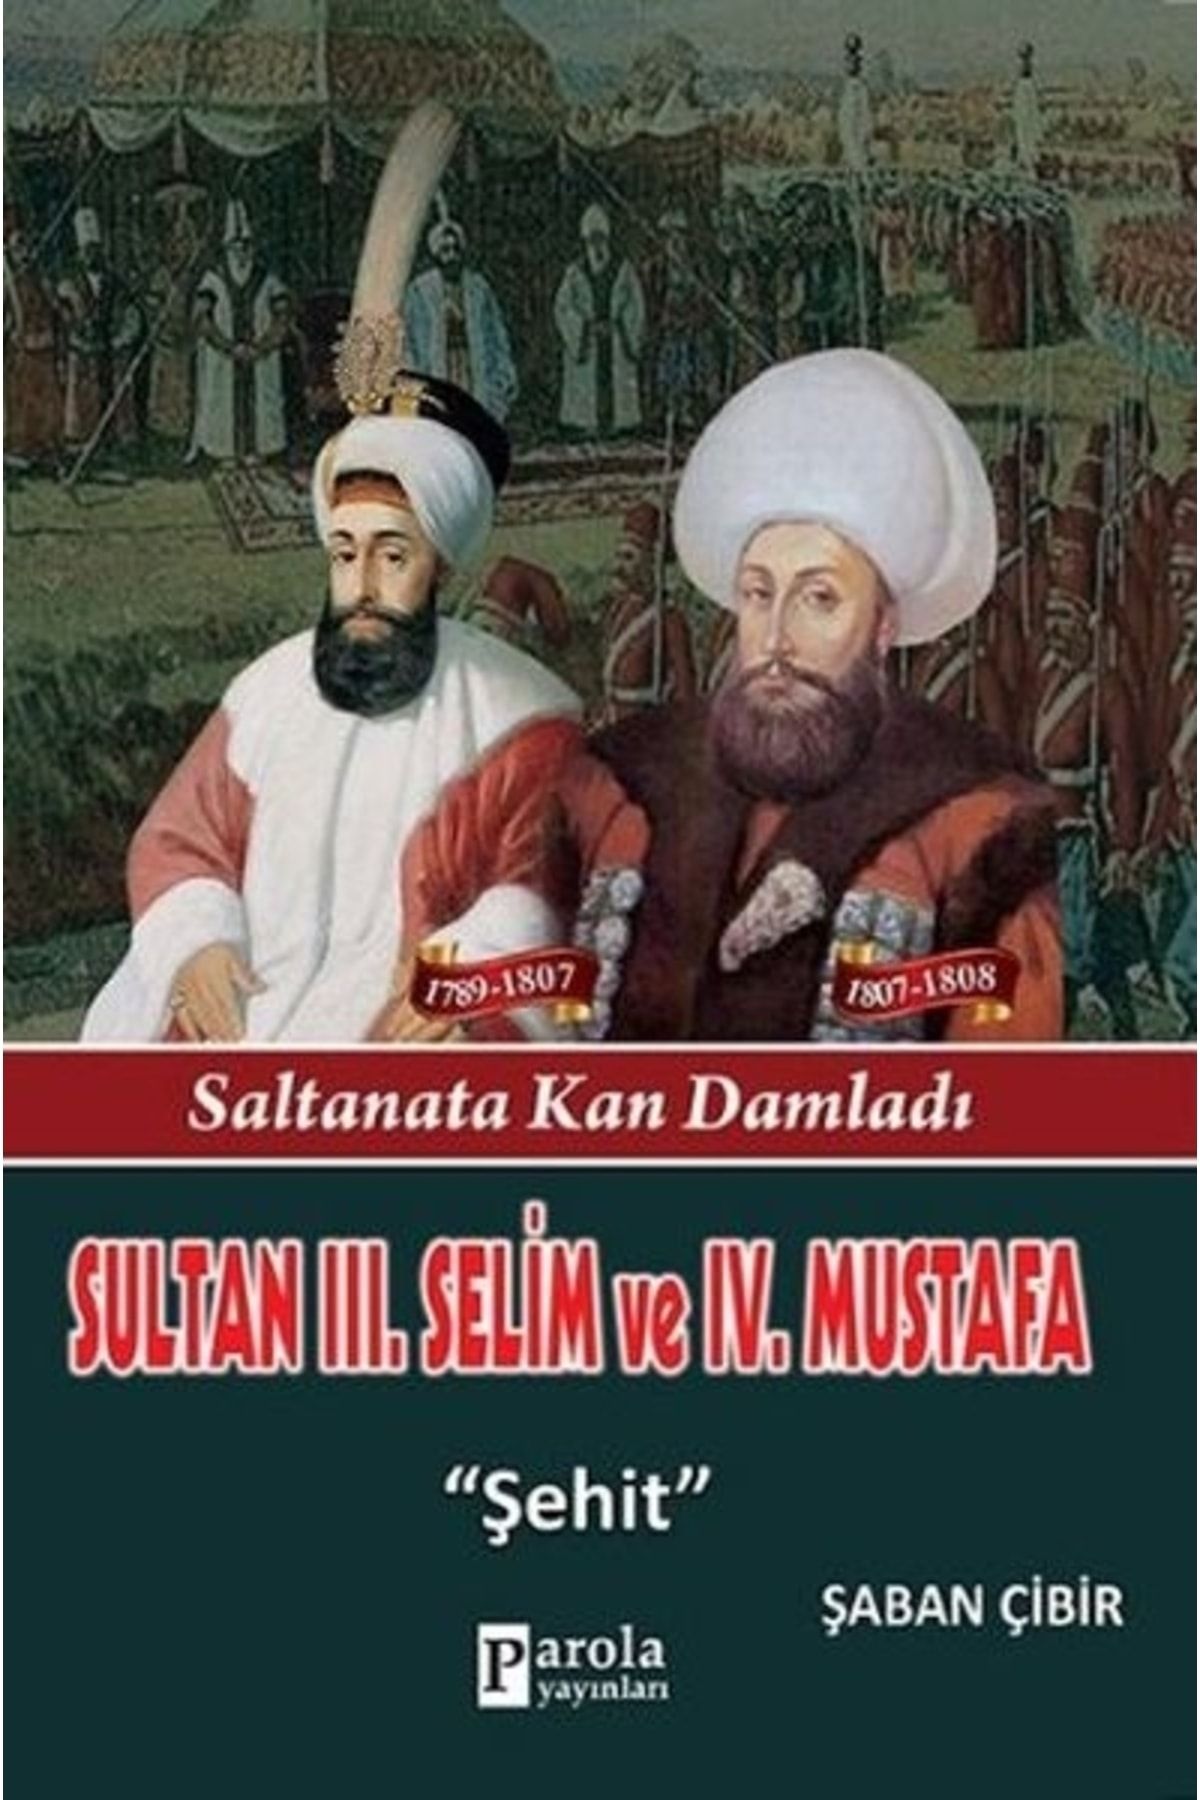 Parola Yayınları Sultan 3. Selim Ve 4. Mustafa